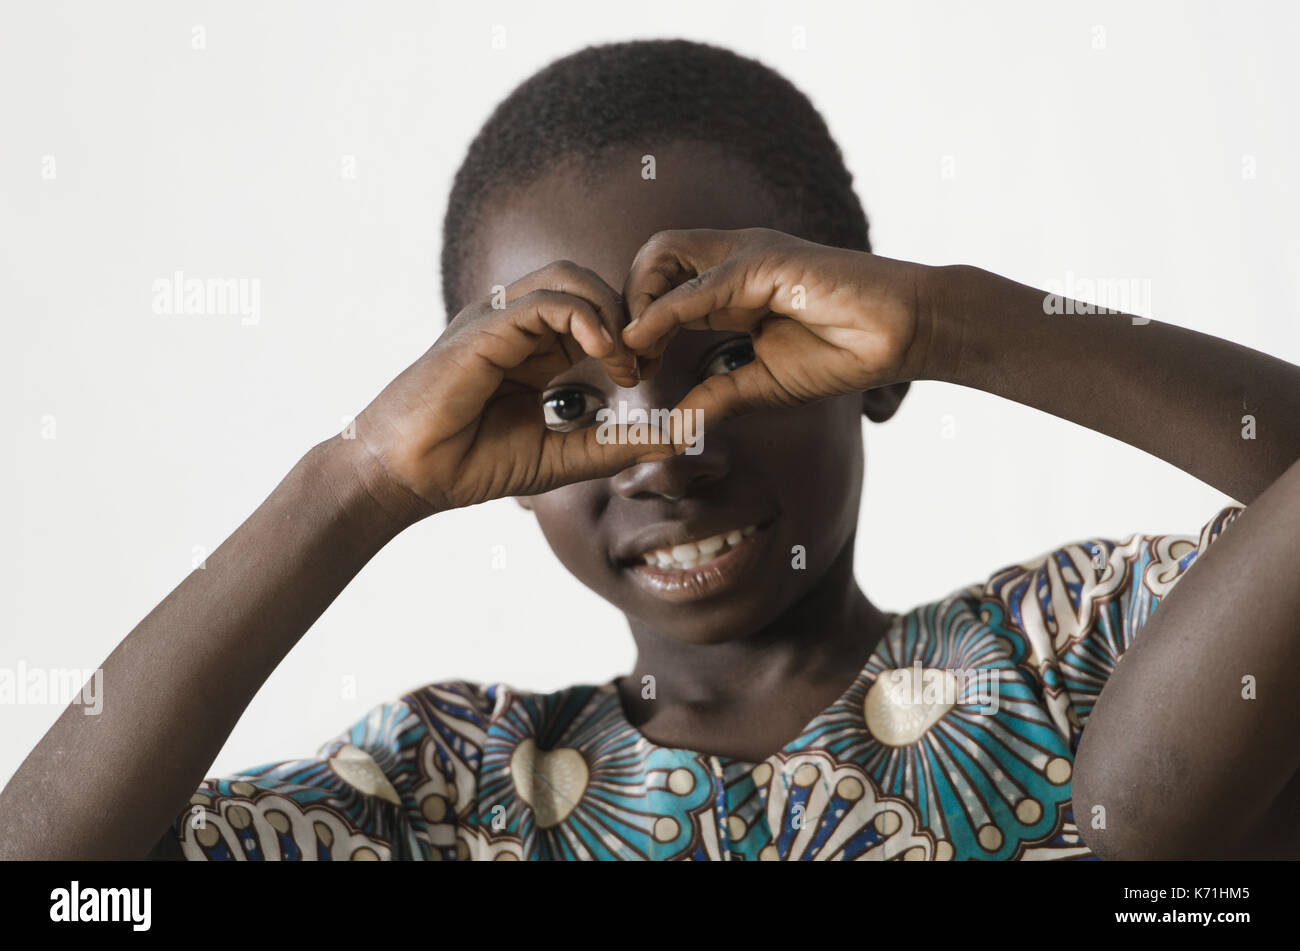 Petit enfant noir de l'Afrique montrant le symbole de coeur avec ses mains, isolated on white Banque D'Images